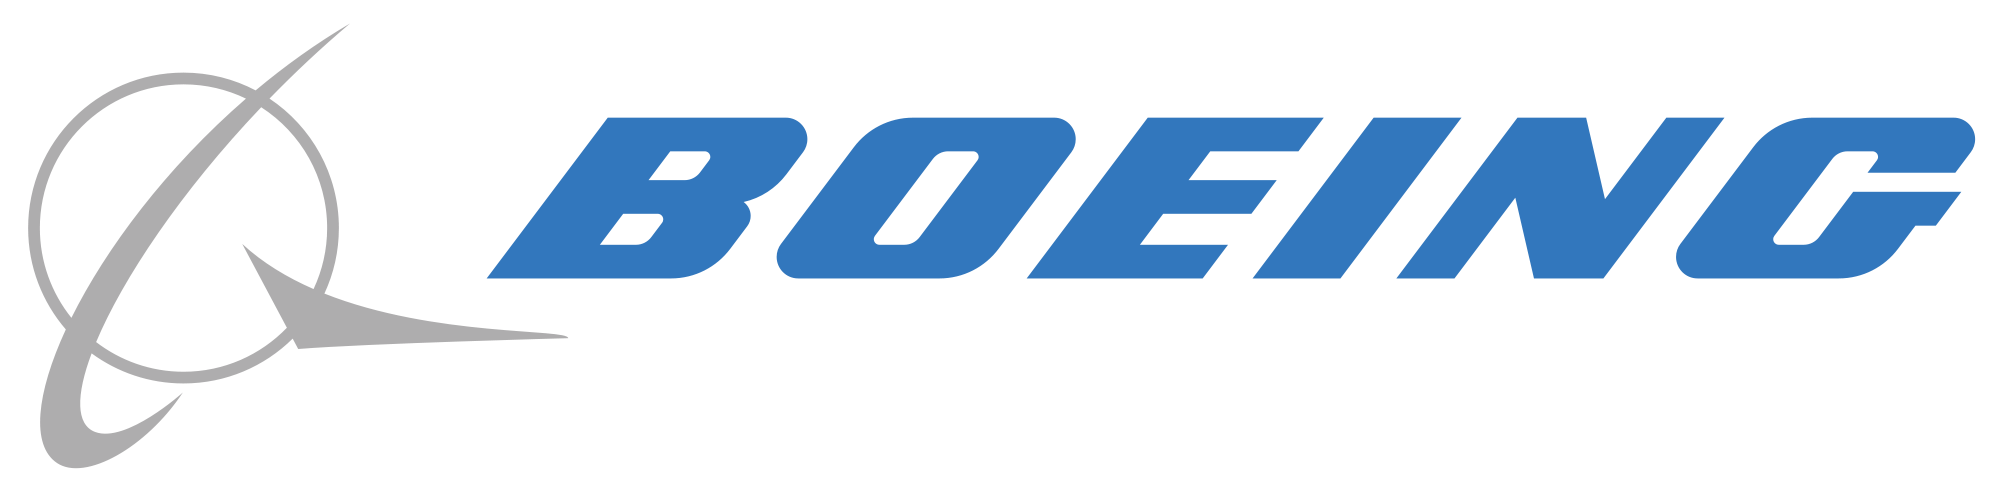 Boeing_Logo.png